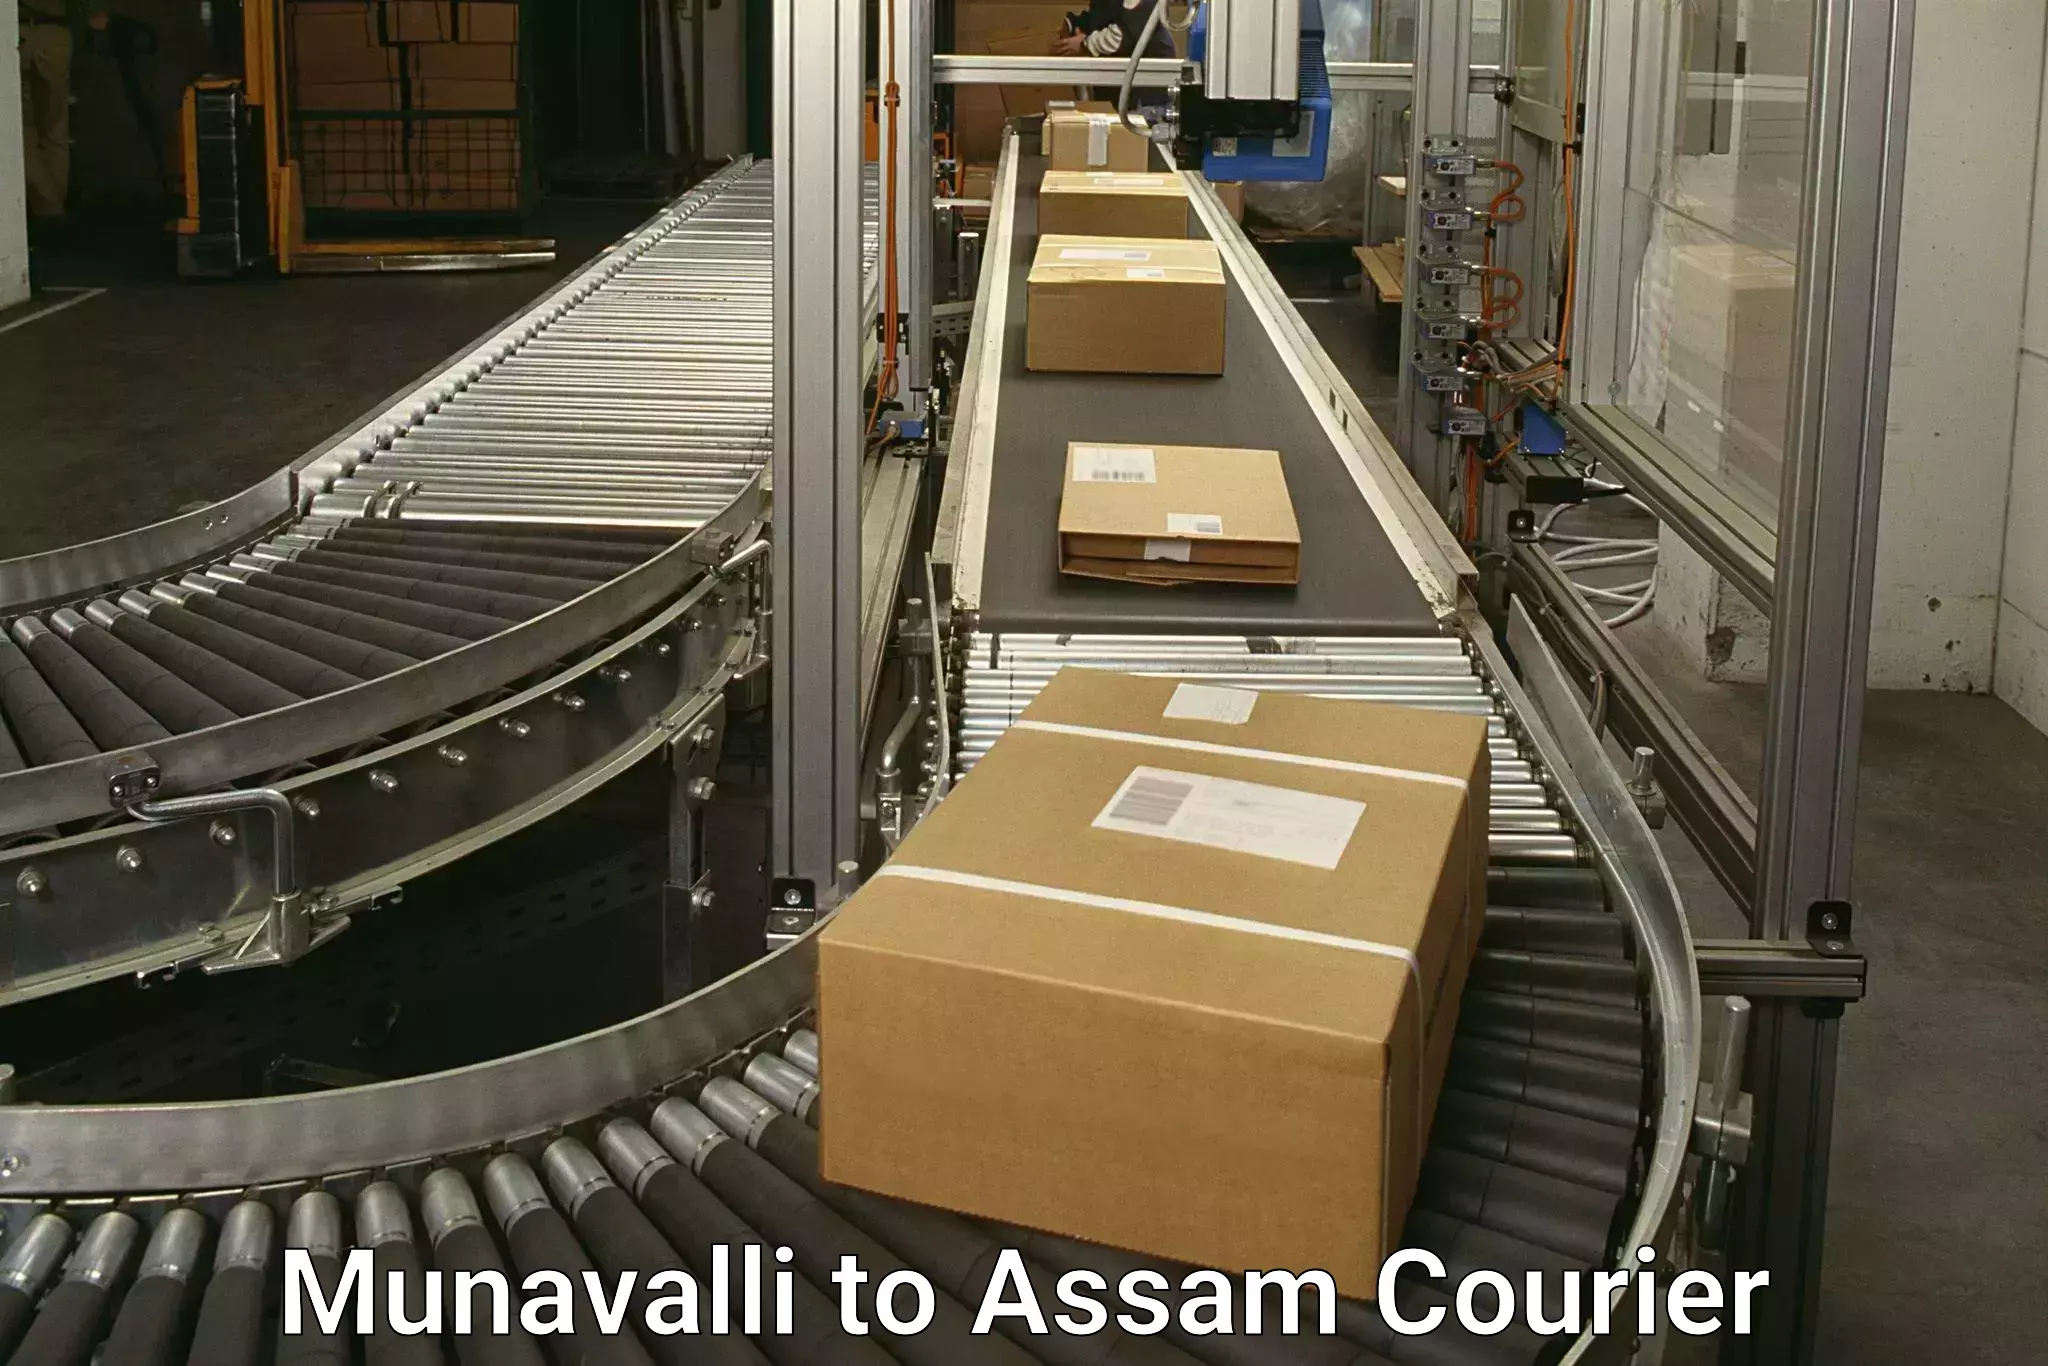 24-hour courier service Munavalli to Assam